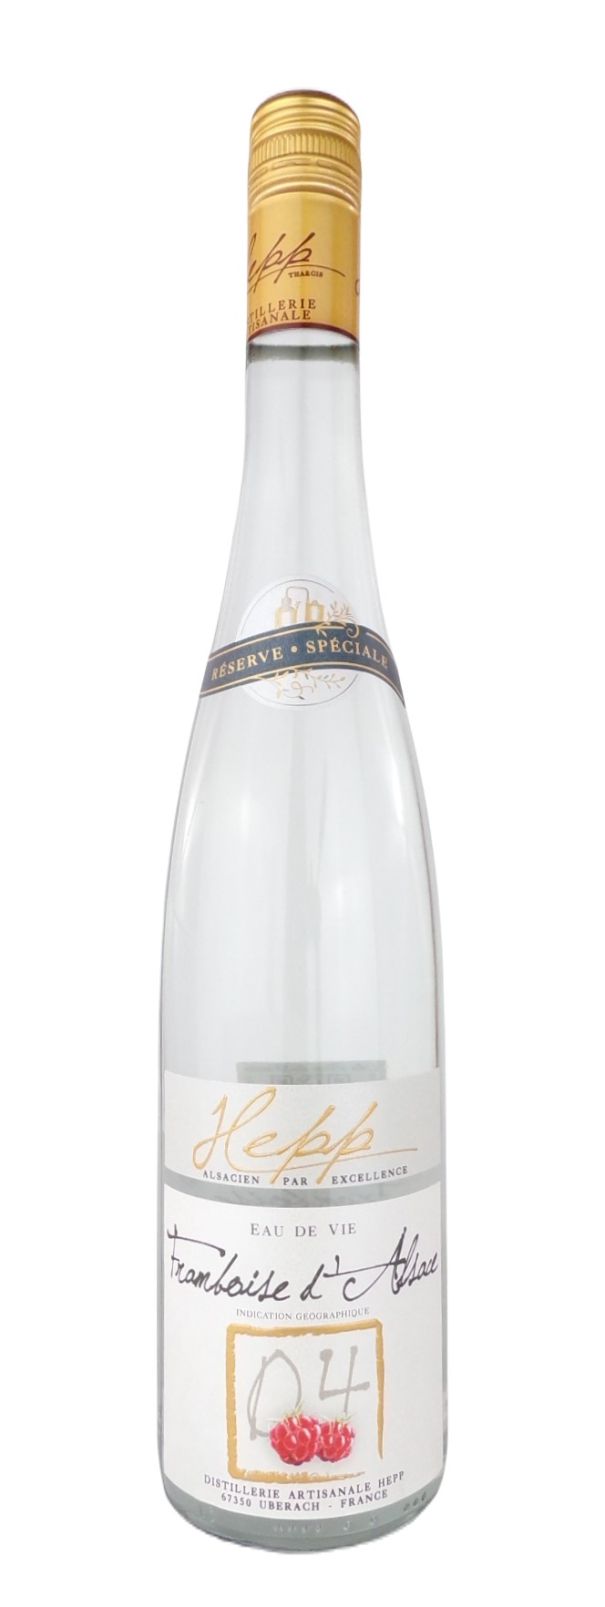 Eau-de-vie Framboise d'Alsace IGP - Distillerie Hepp